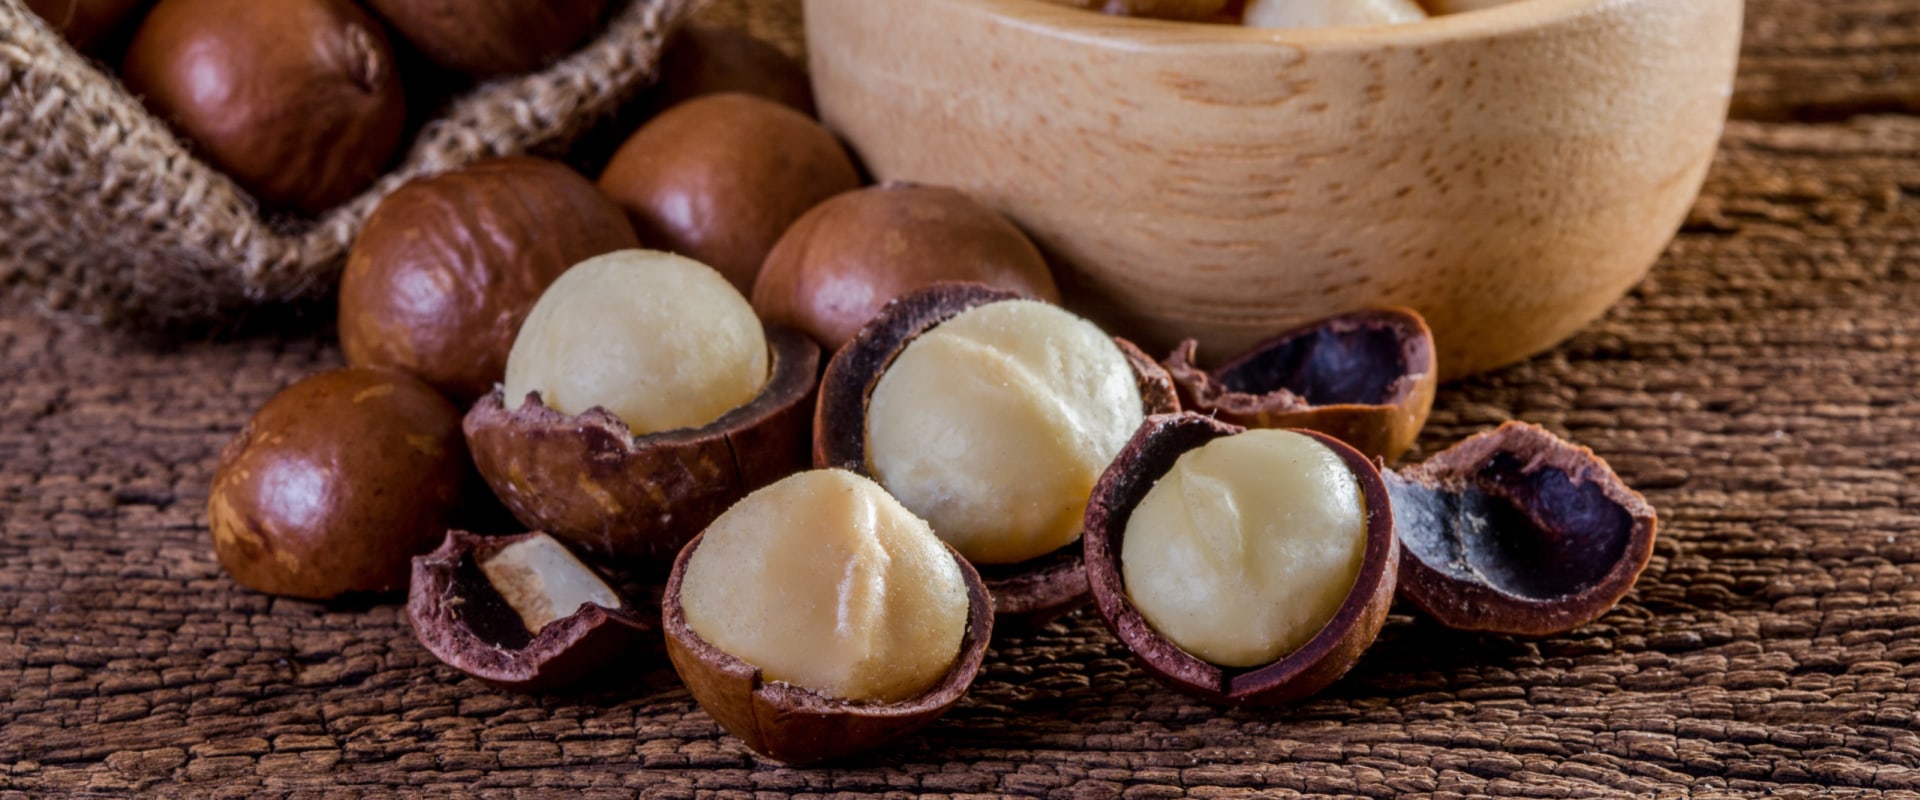 When season do macadamia nuts ripen?